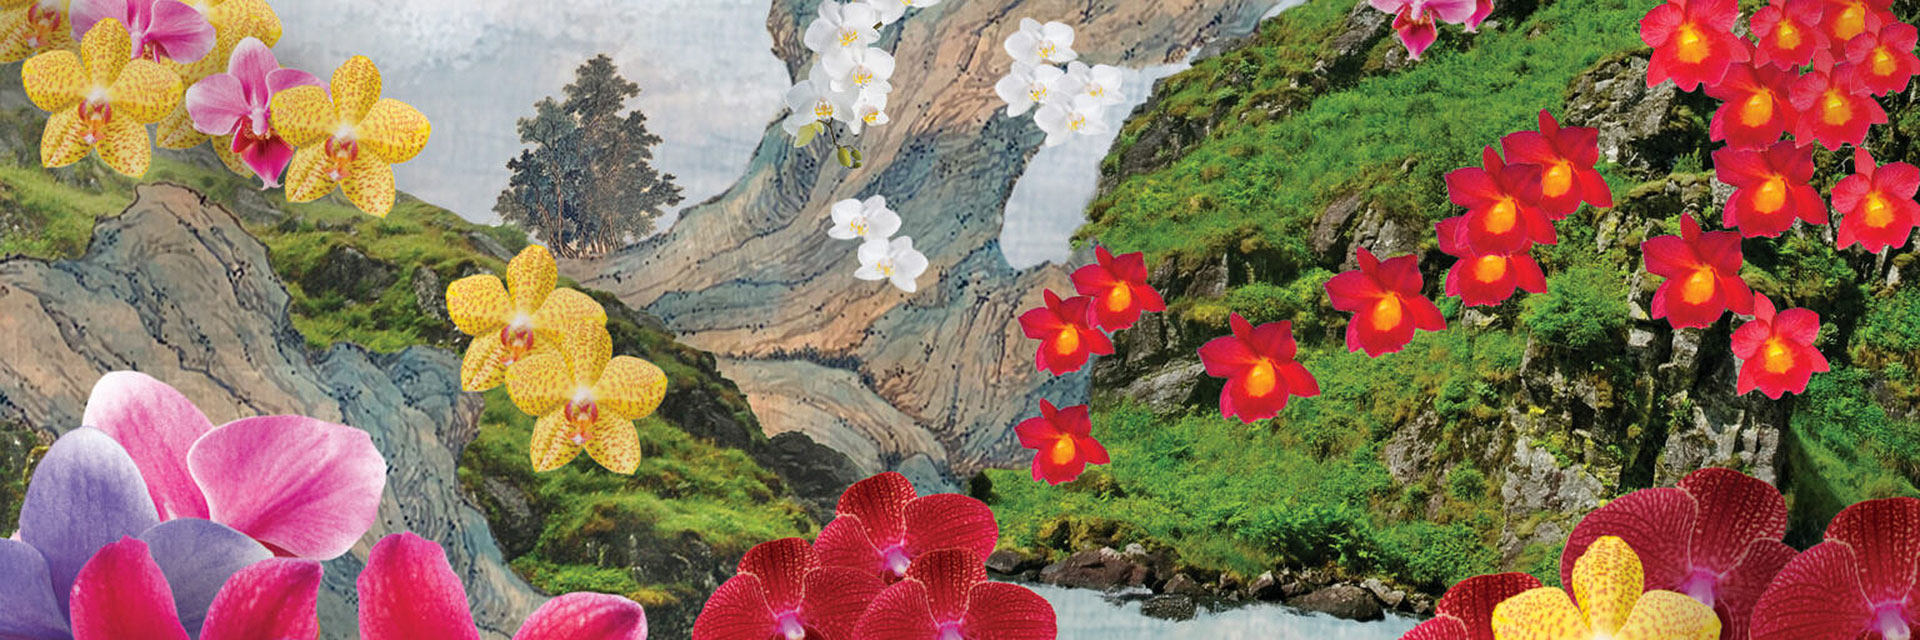 Лили Квонг: китайские пейзажи и шоу орхидей